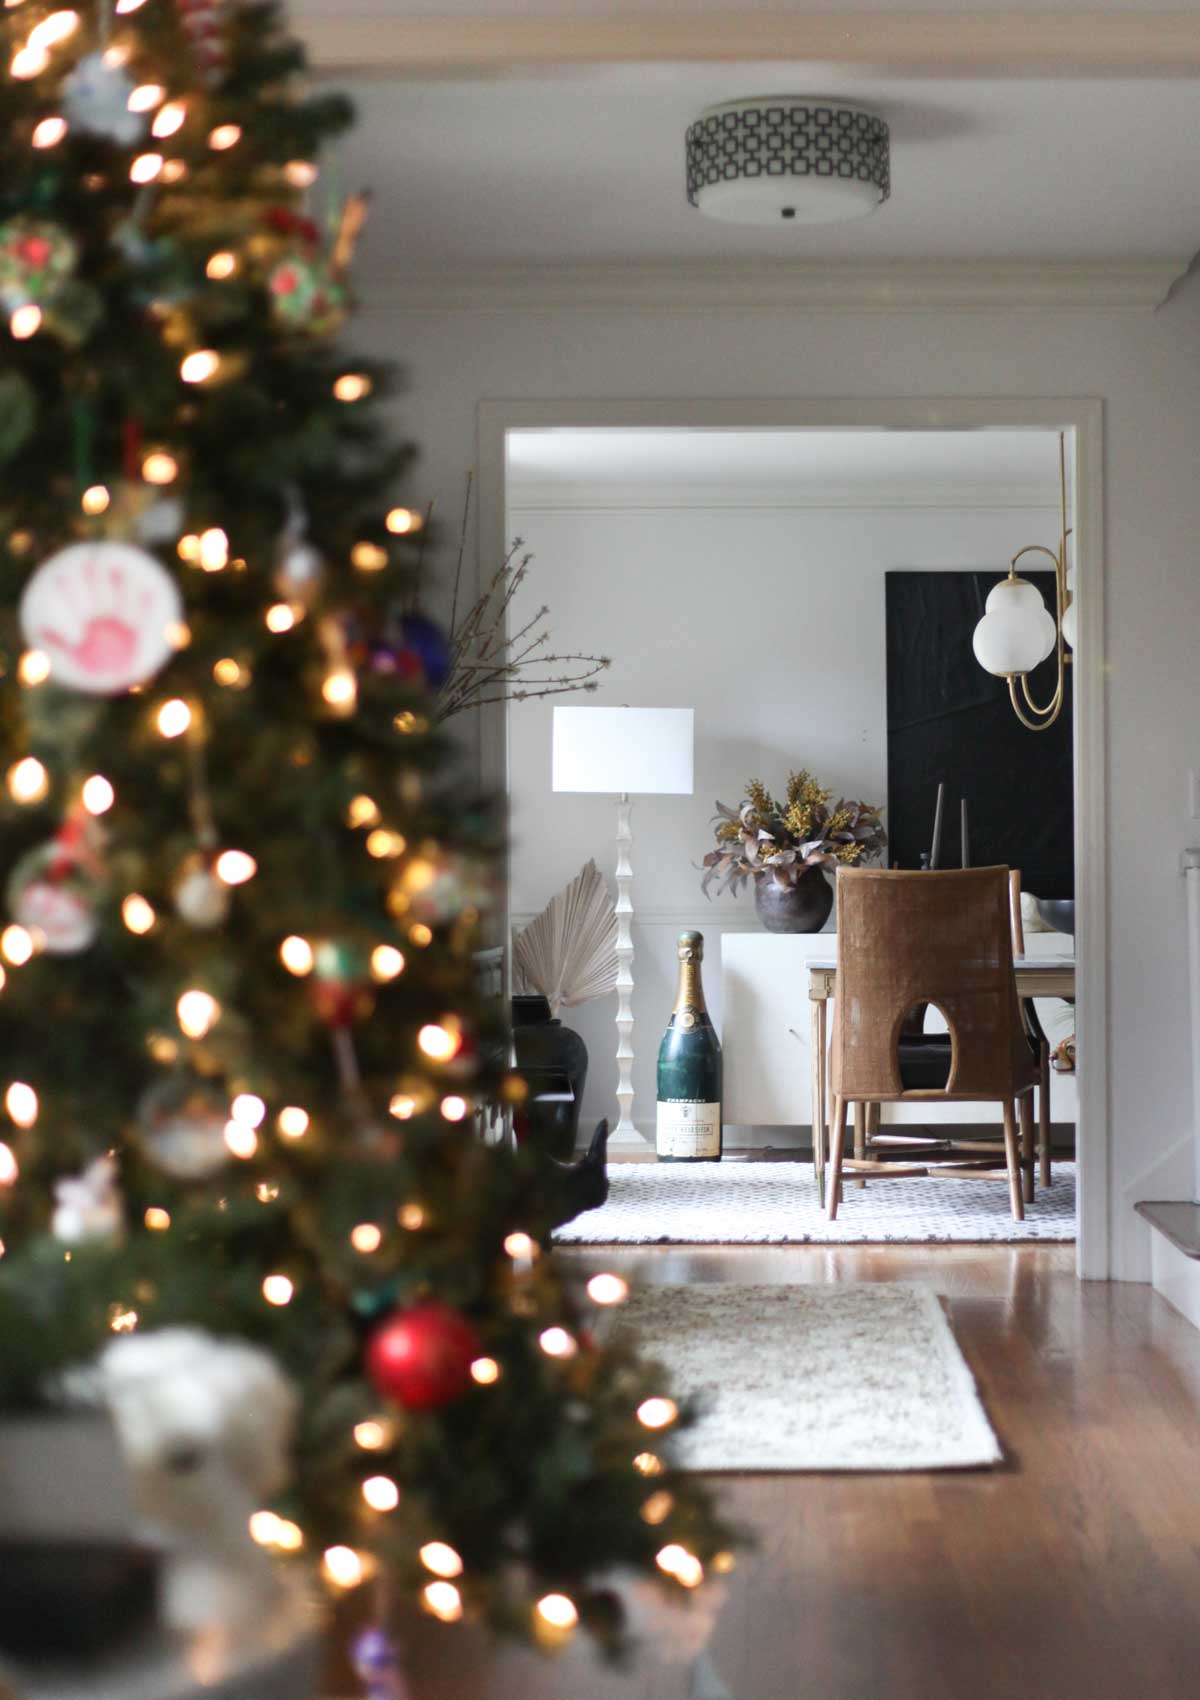 Holiday Home Tour - Christmas Tree Decor